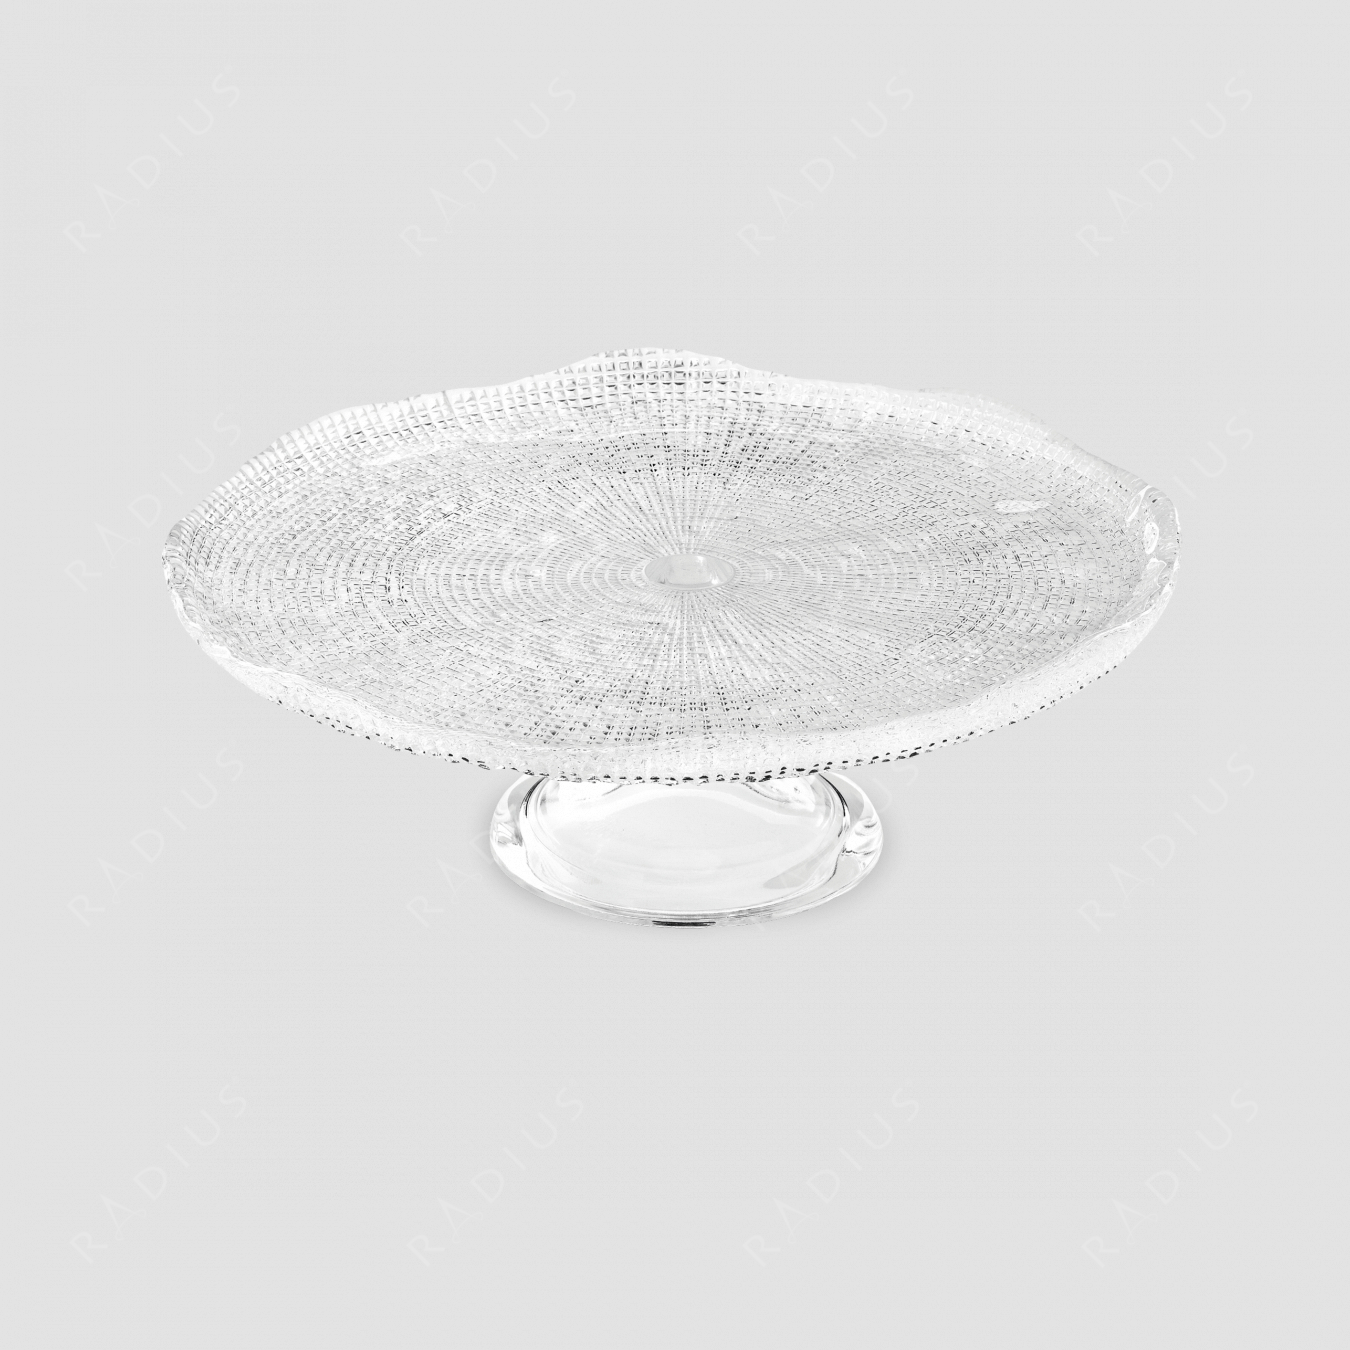 Блюдо круглое на ножке, диаметр: 25 см, высота: 11 см, материал: стекло, цвет: прозрачный, серия Diamante, IVV (Italy), Италия